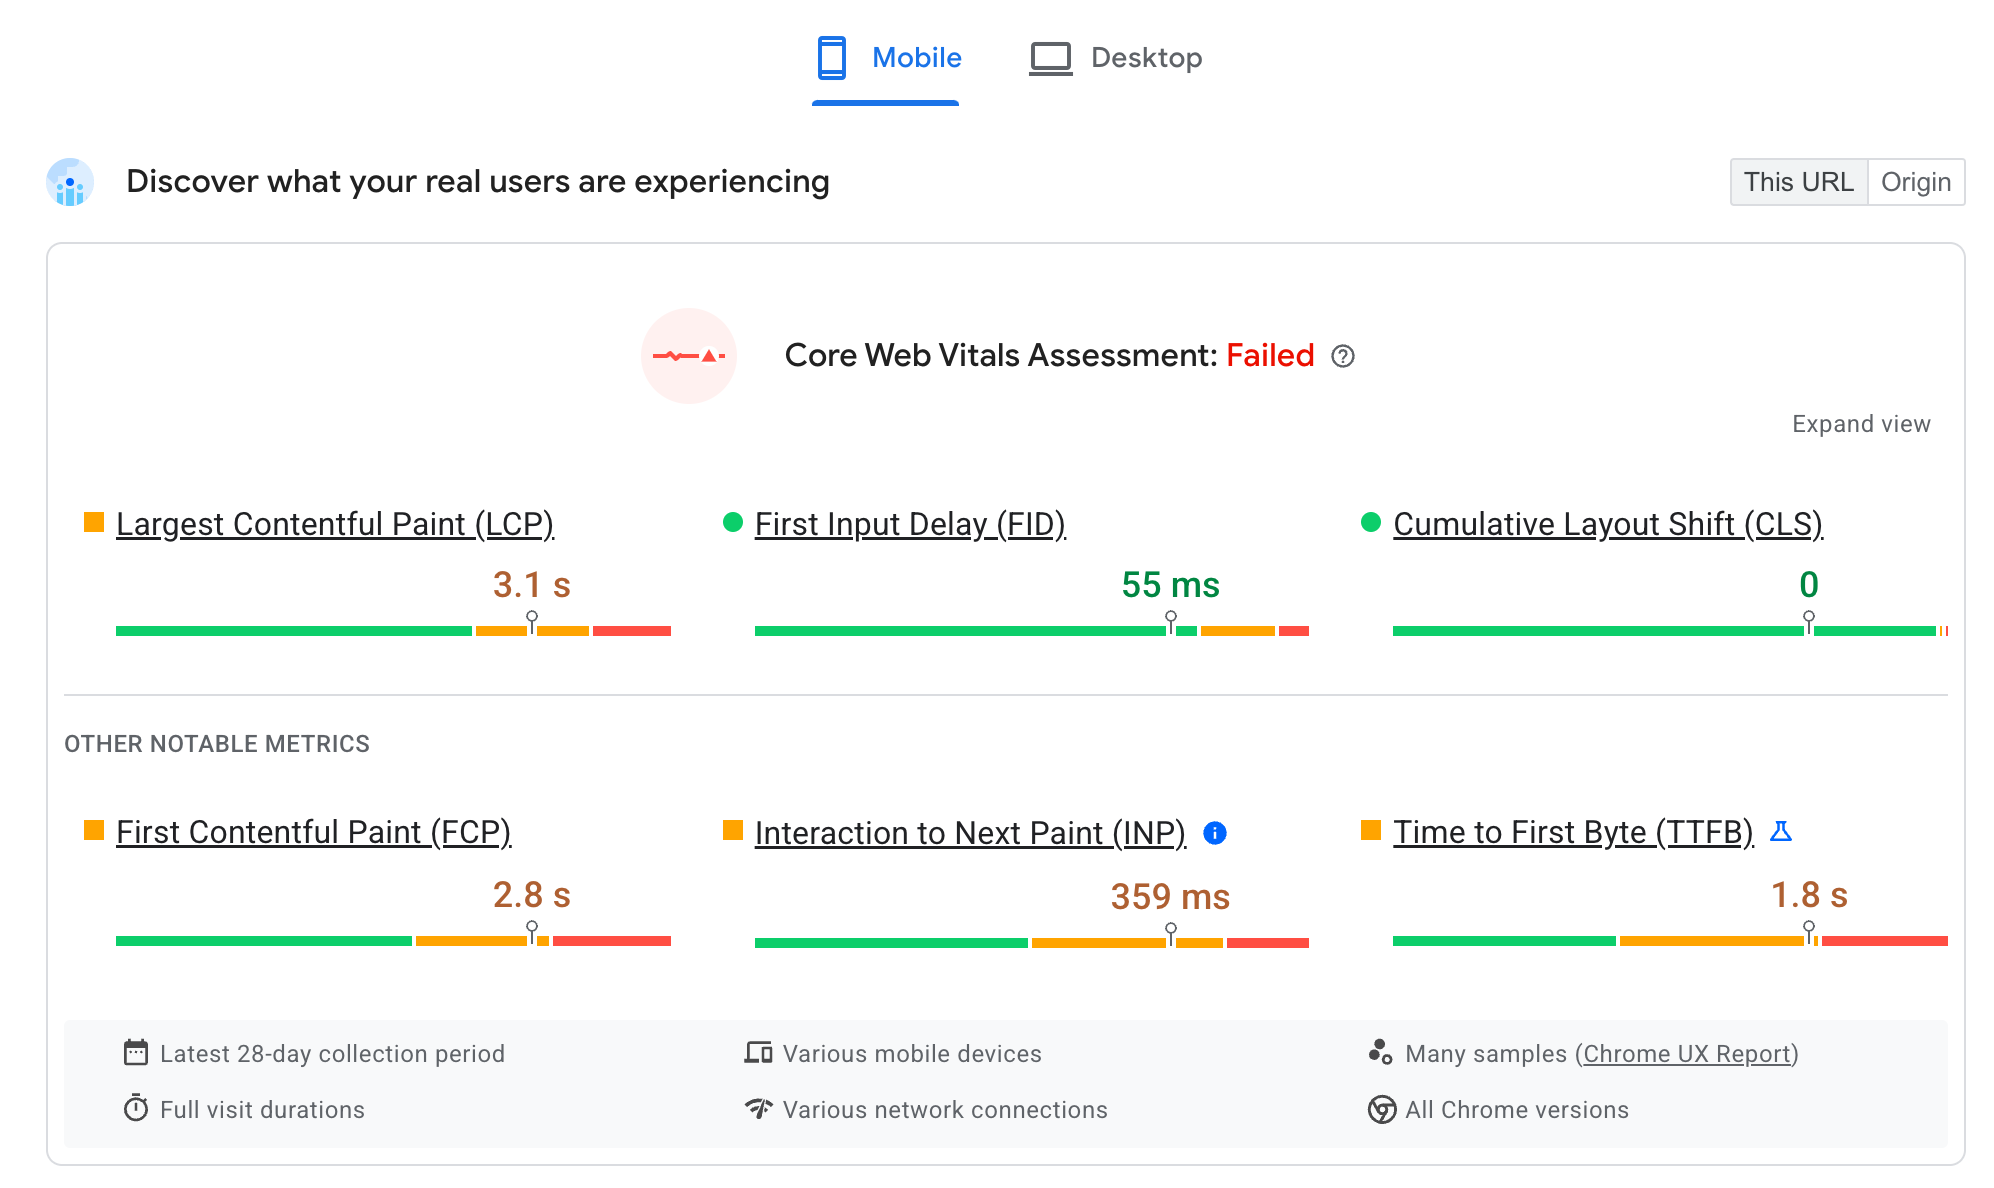 螢幕截圖：PageSpeed Insights 如何呈現網址的 CrUX 資料。每個網站體驗核心指標都會分開顯示，同時將各個網站體驗核心指標歸類至過去 28 天的「良好」、「需要改善」和「不佳」閾值。